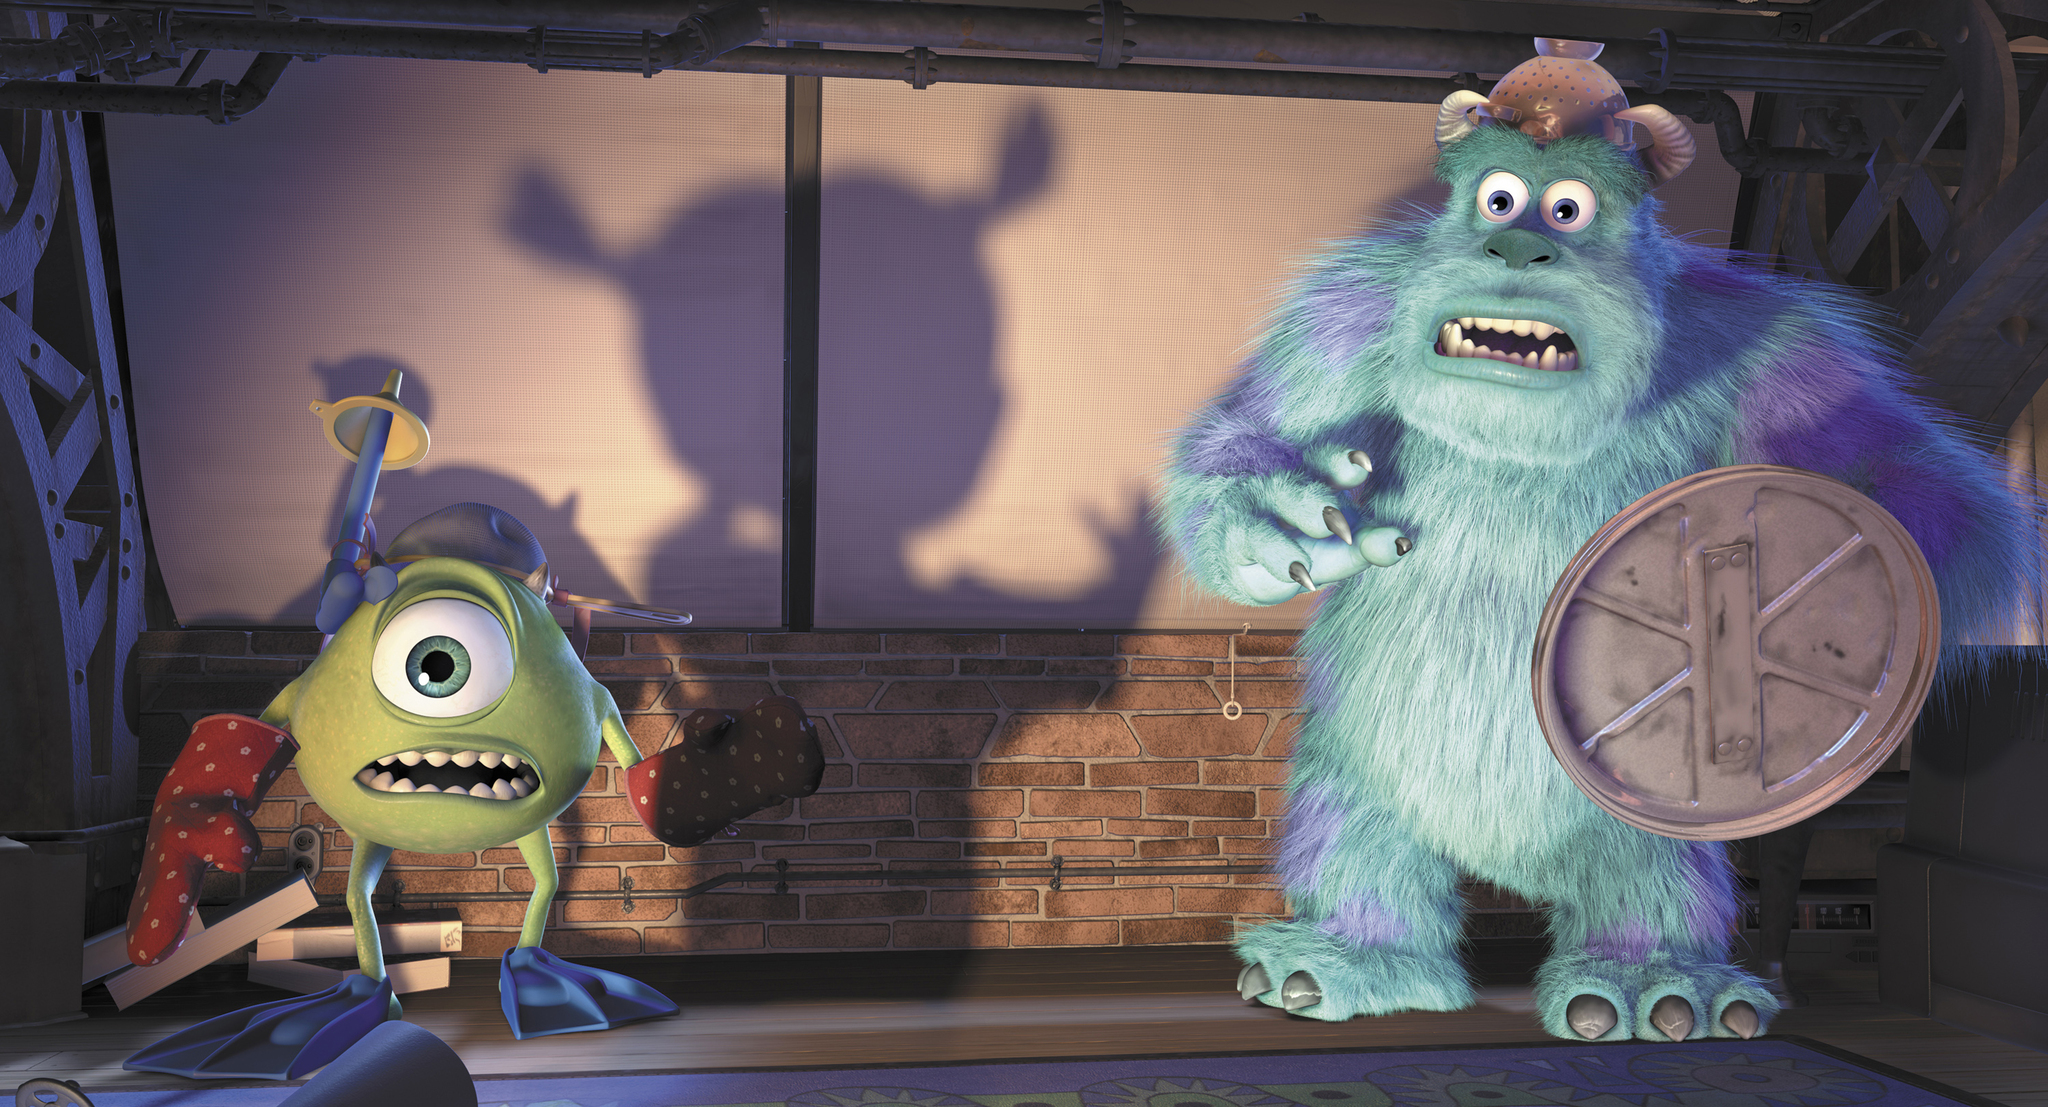 Izvrnuto obrnuto 2 rastura u kinima, a mi smo povodom toga izdvojili 15 najboljih Pixarovih filmova